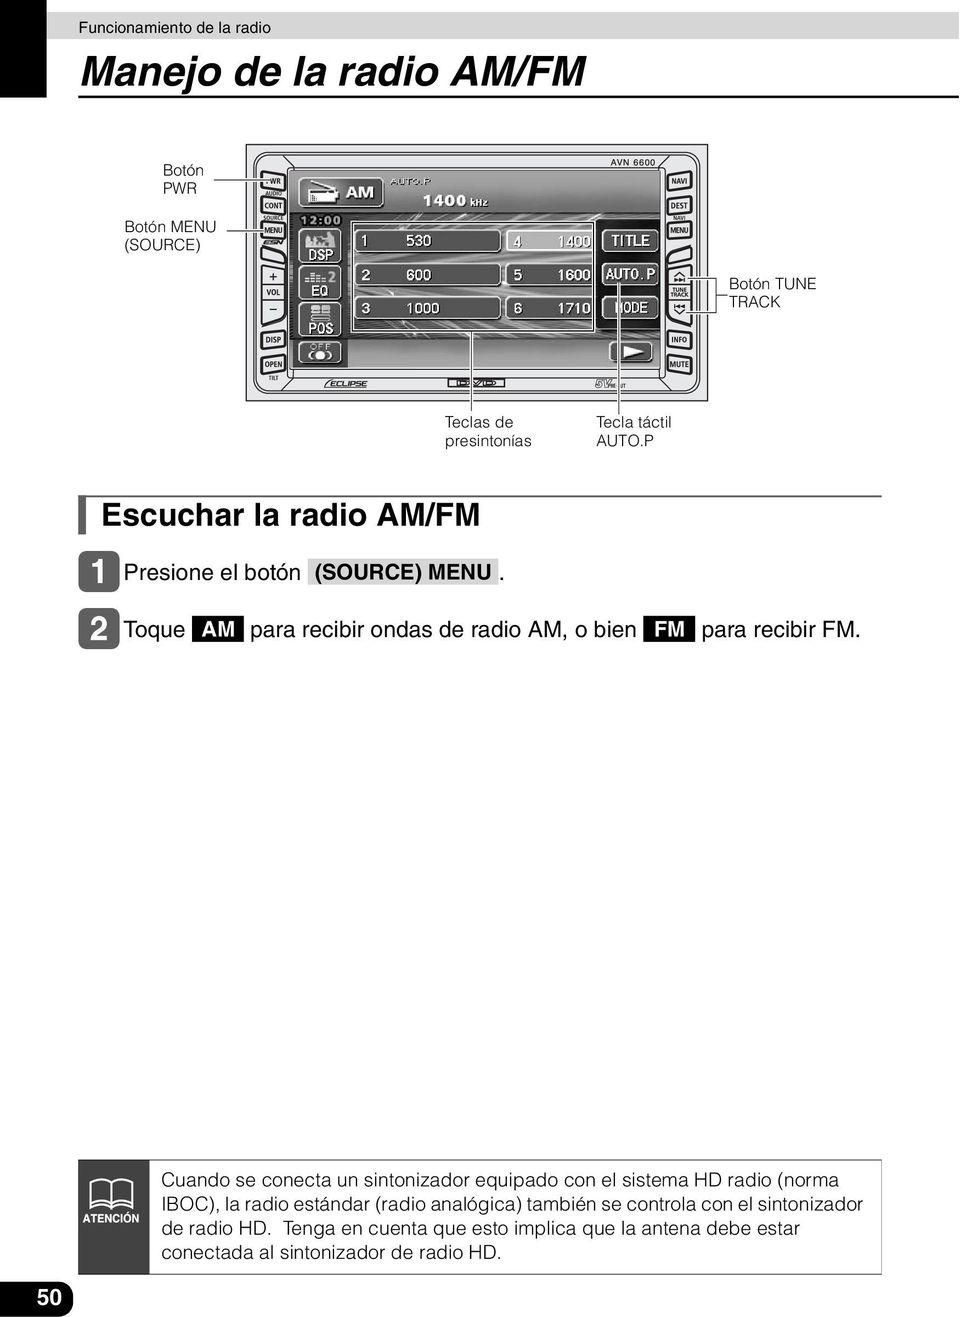 Toque AM para recibir ondas de radio AM, o bien FM para recibir FM.